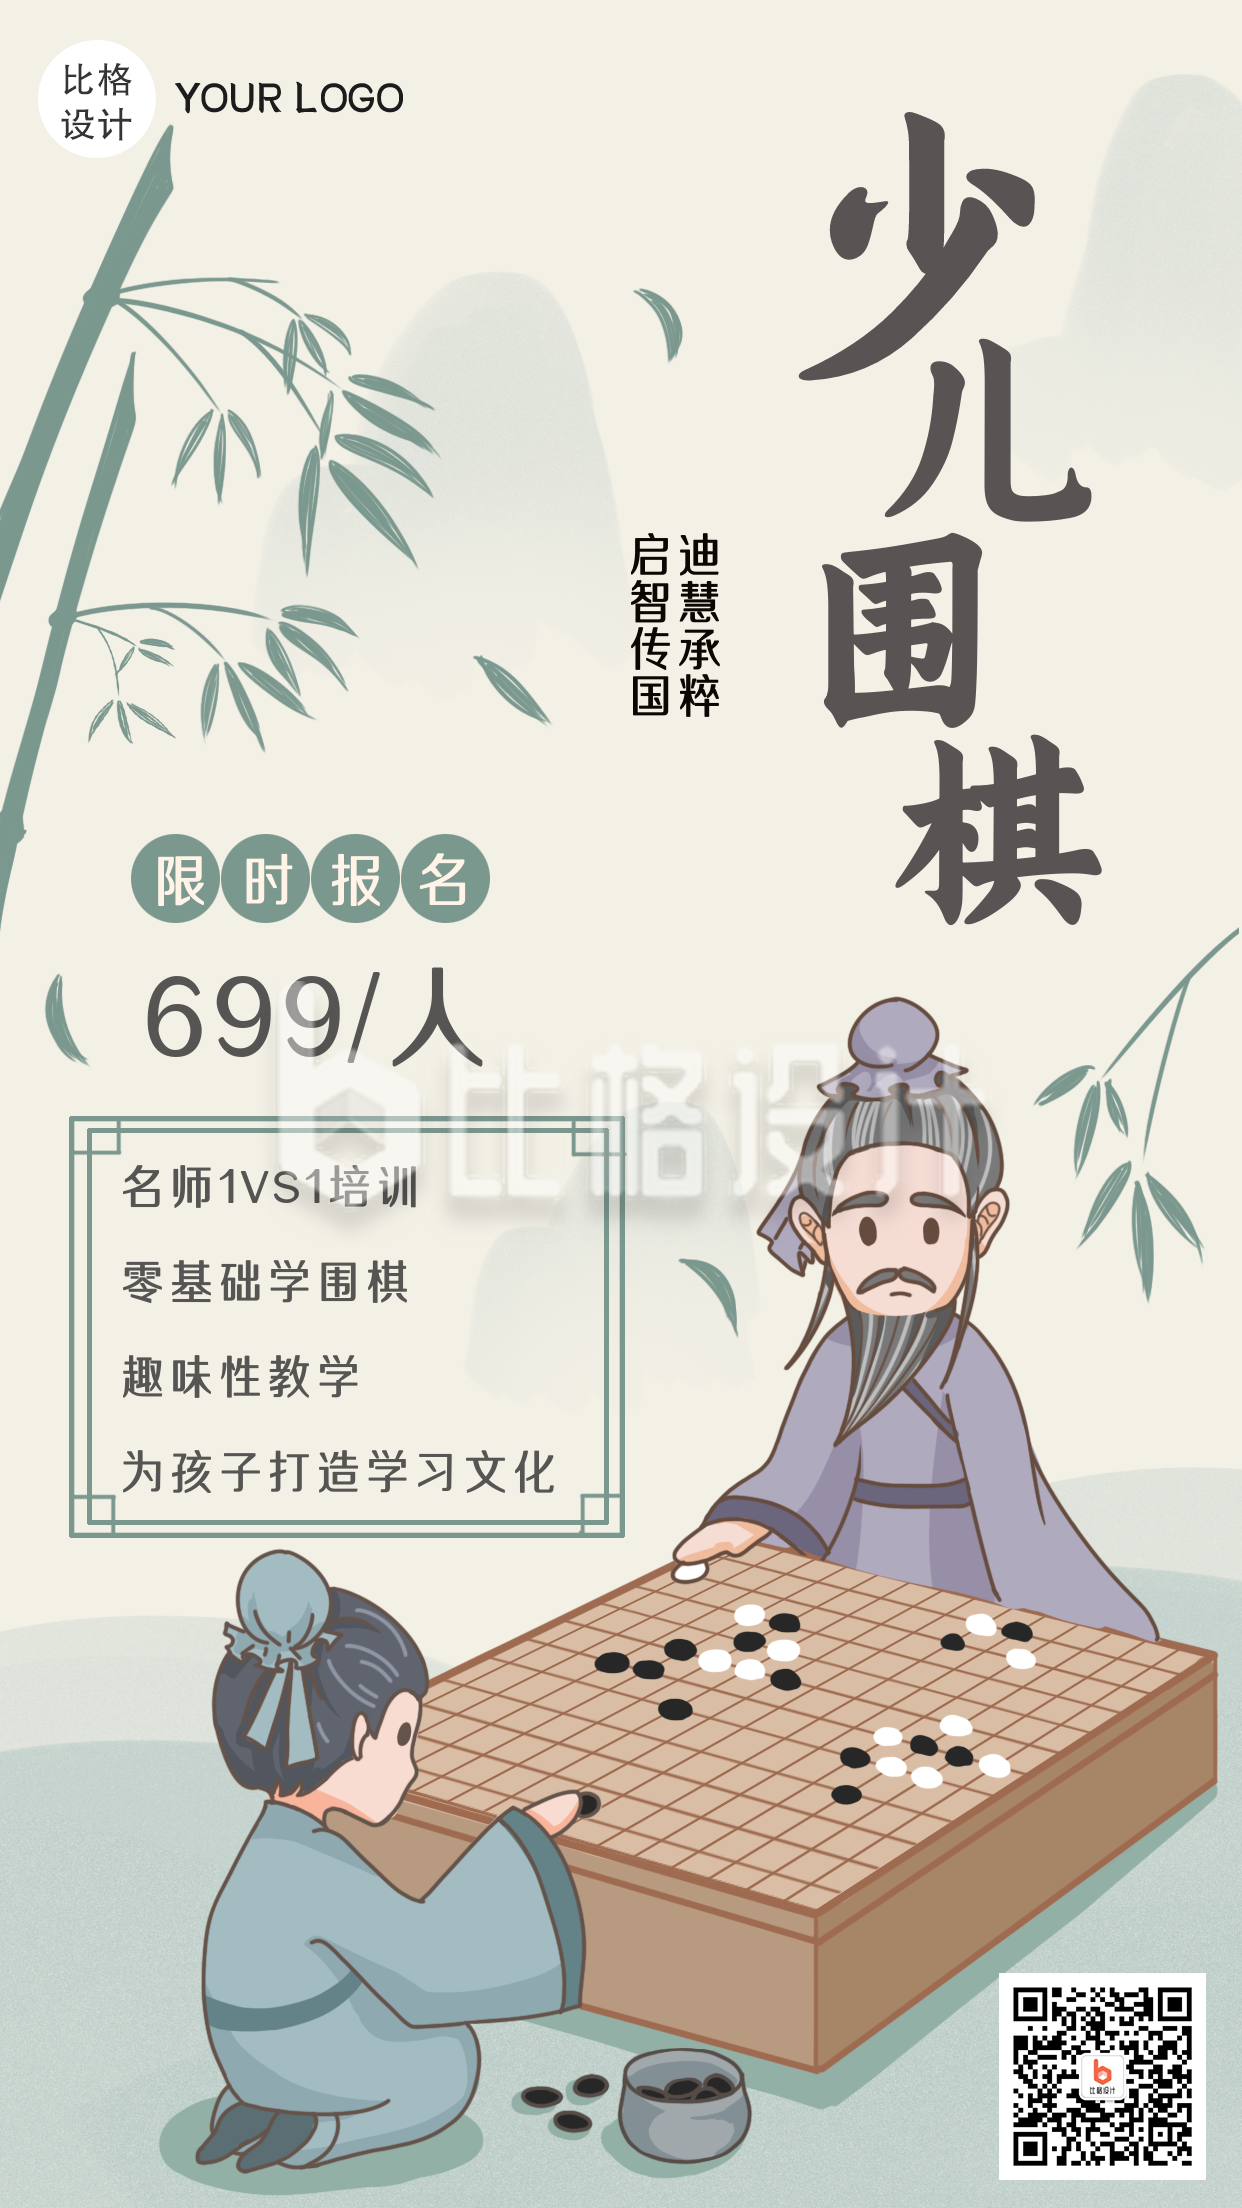 少儿围棋兴趣班招生中国风手绘手机海报